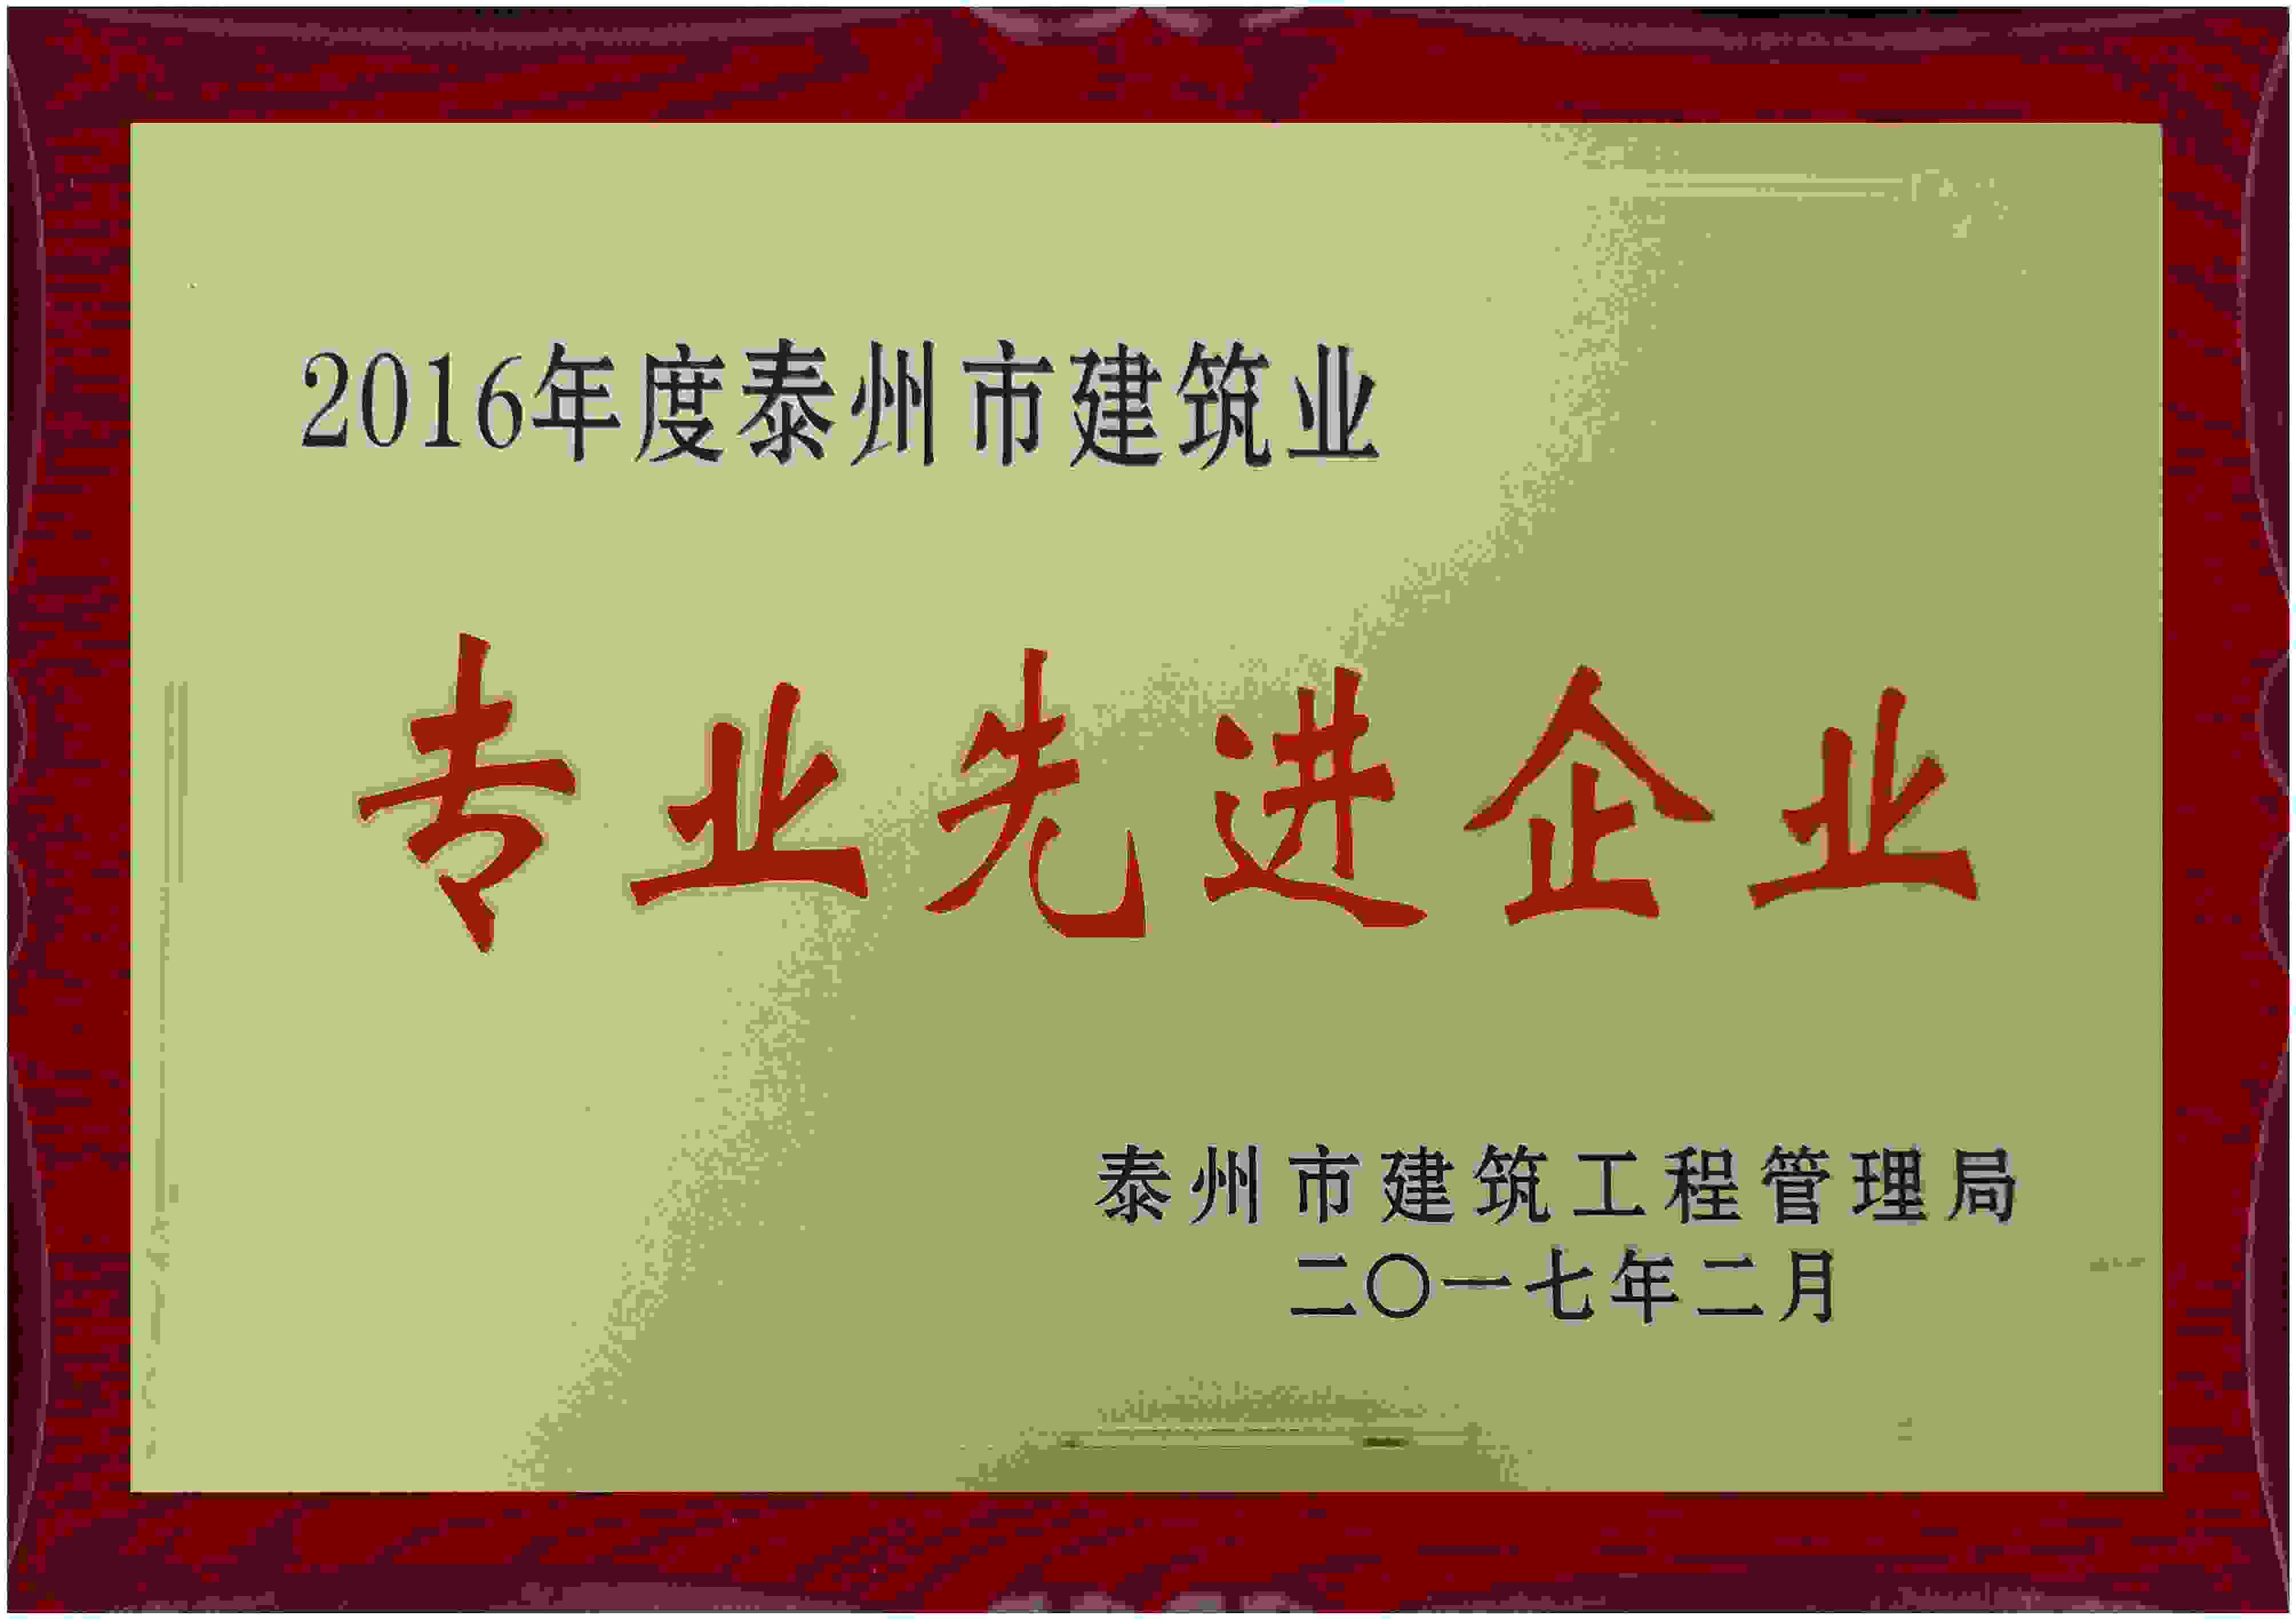 2017年 江苏省泰州市建筑工程管理局颁发的“2016年度泰州市建筑业 专业先进企业”企业荣誉奖牌